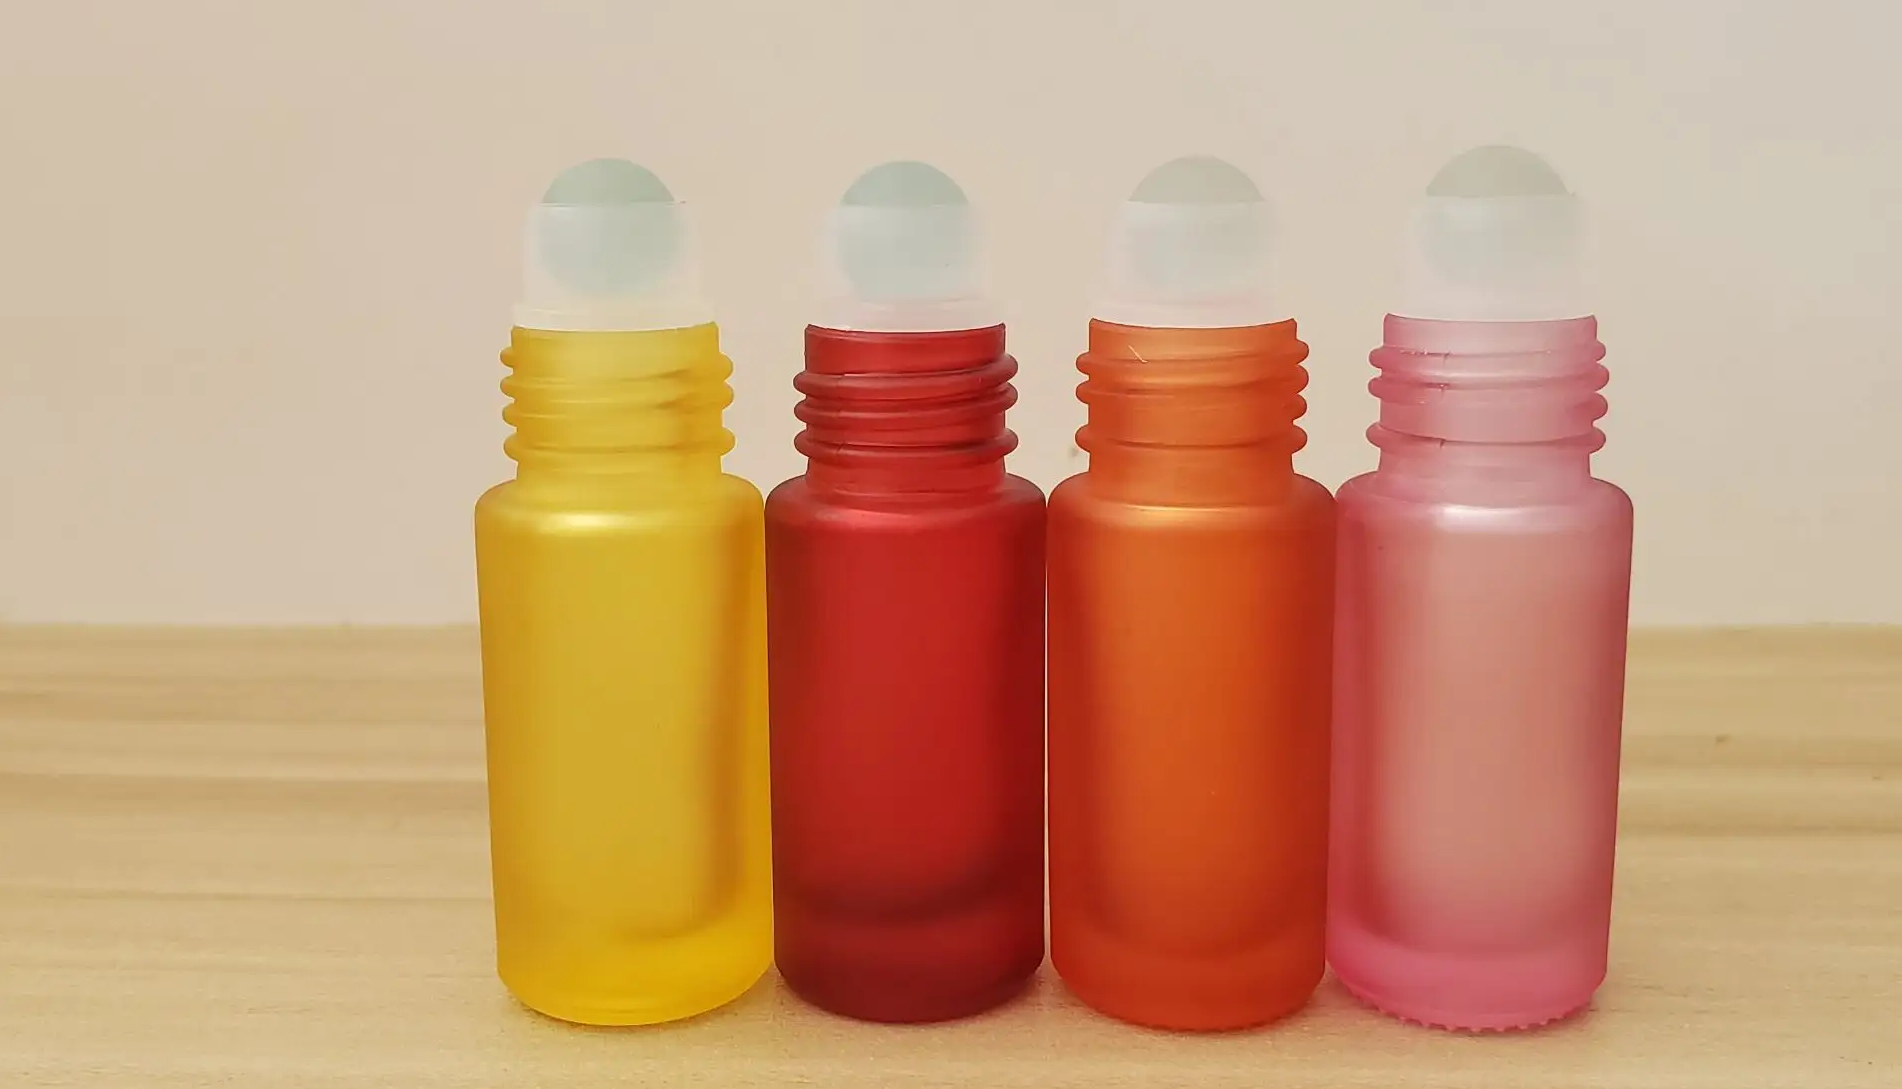 BEYAQI's Roller Bottles - Where Elegance Meets Skincare